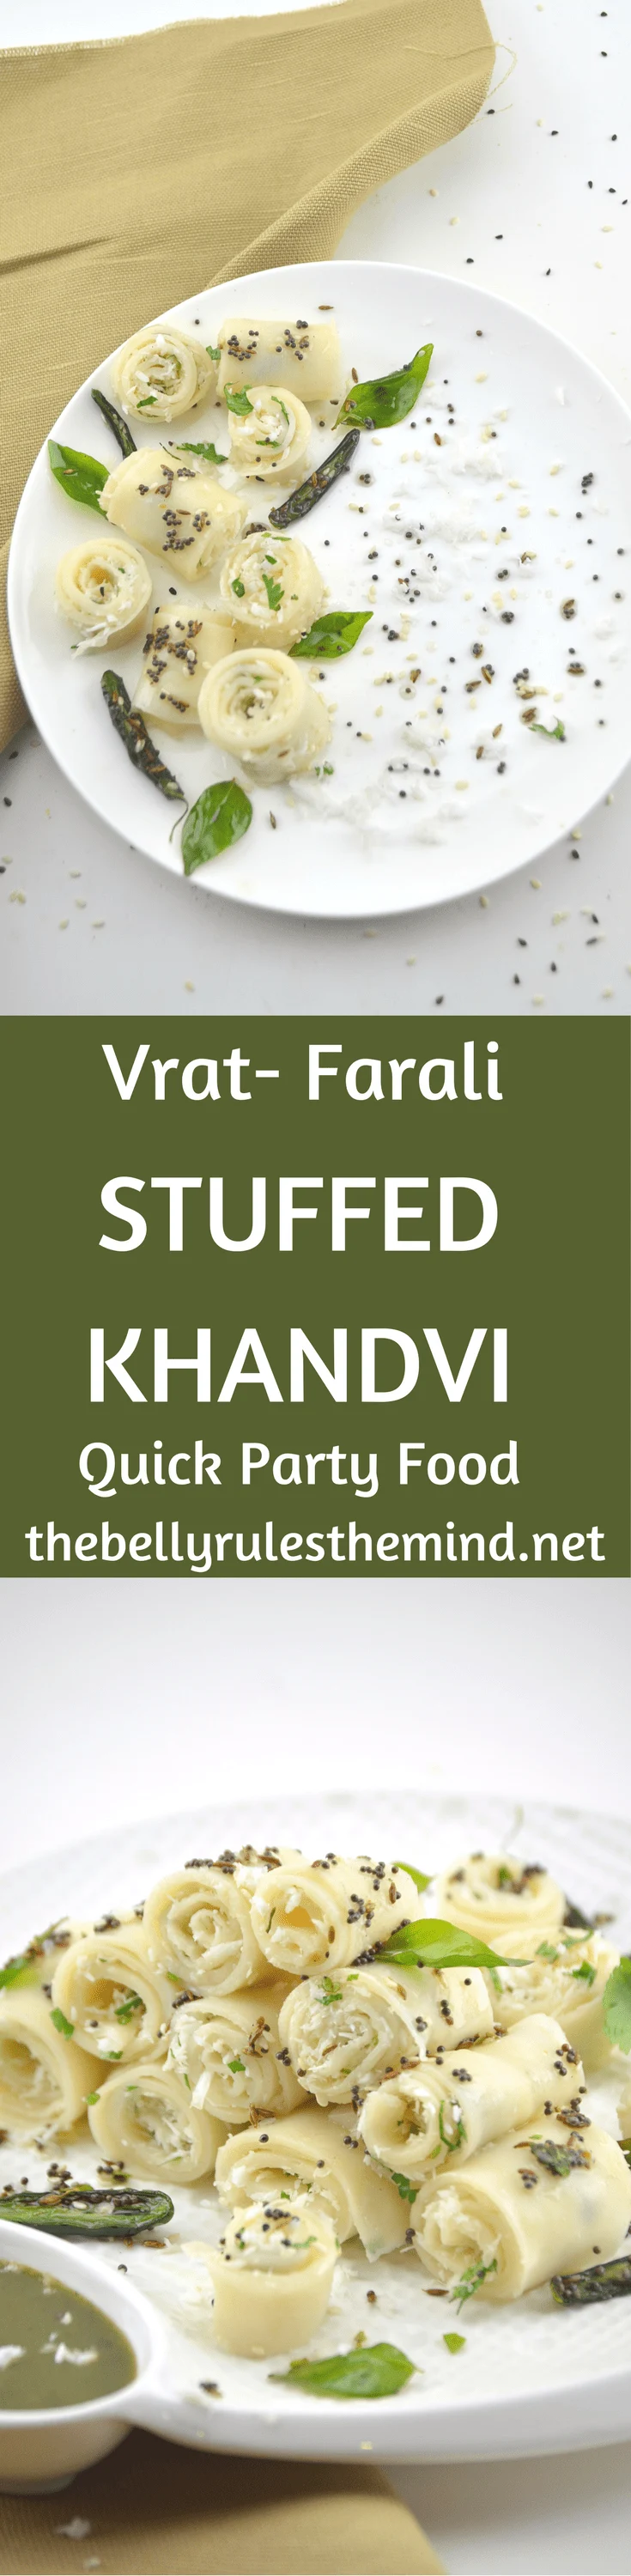 Stuffed Faraali Khandvi